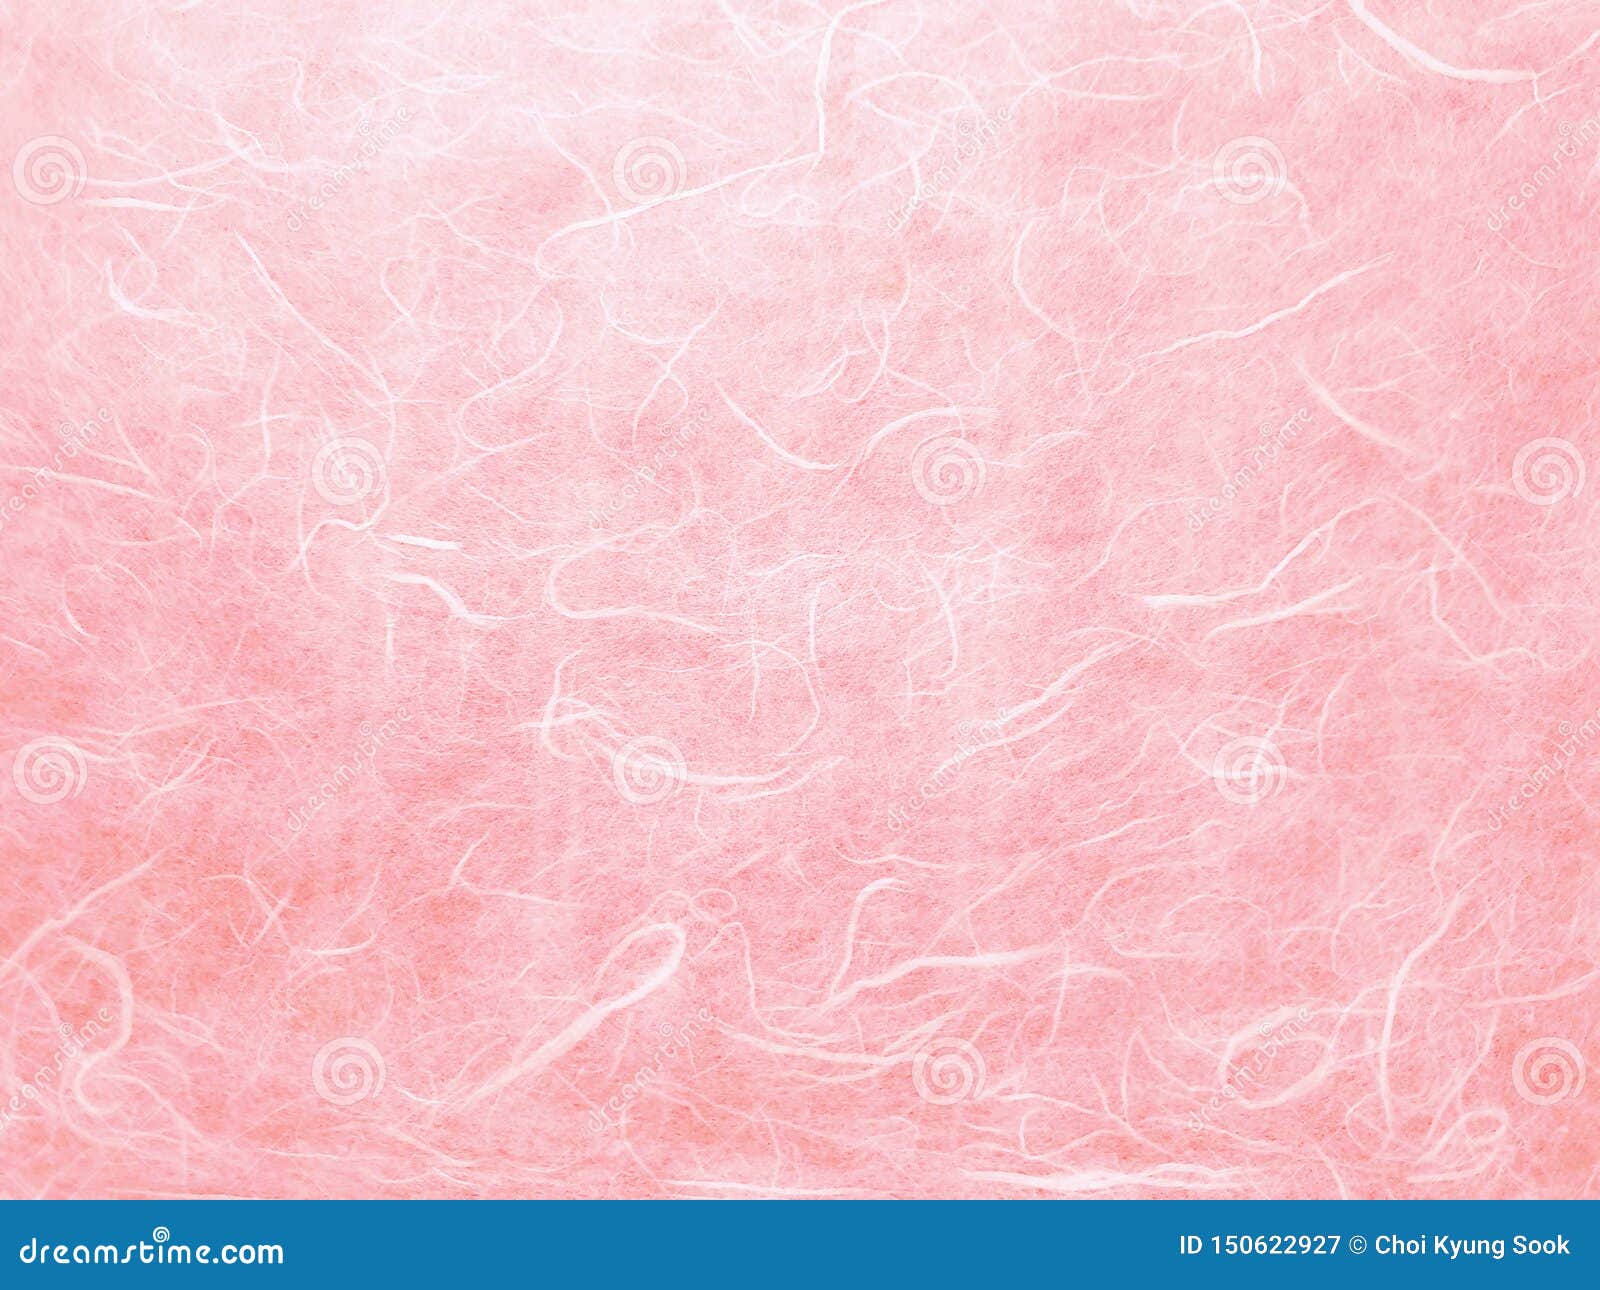 Hình nền giấy truyền thống Hàn Quốc màu hồng - Bạn đang tìm kiếm một hình nền độc đáo và truyền thống? Hãy xem ngay hình nền giấy truyền thống Hàn Quốc màu hồng đầy quyến rũ này. Với sắc màu hồng tươi sáng, họa tiết độc đáo, hình nền này sẽ mang lại cảm giác nhẹ nhàng, dịu dàng cho máy tính của bạn.